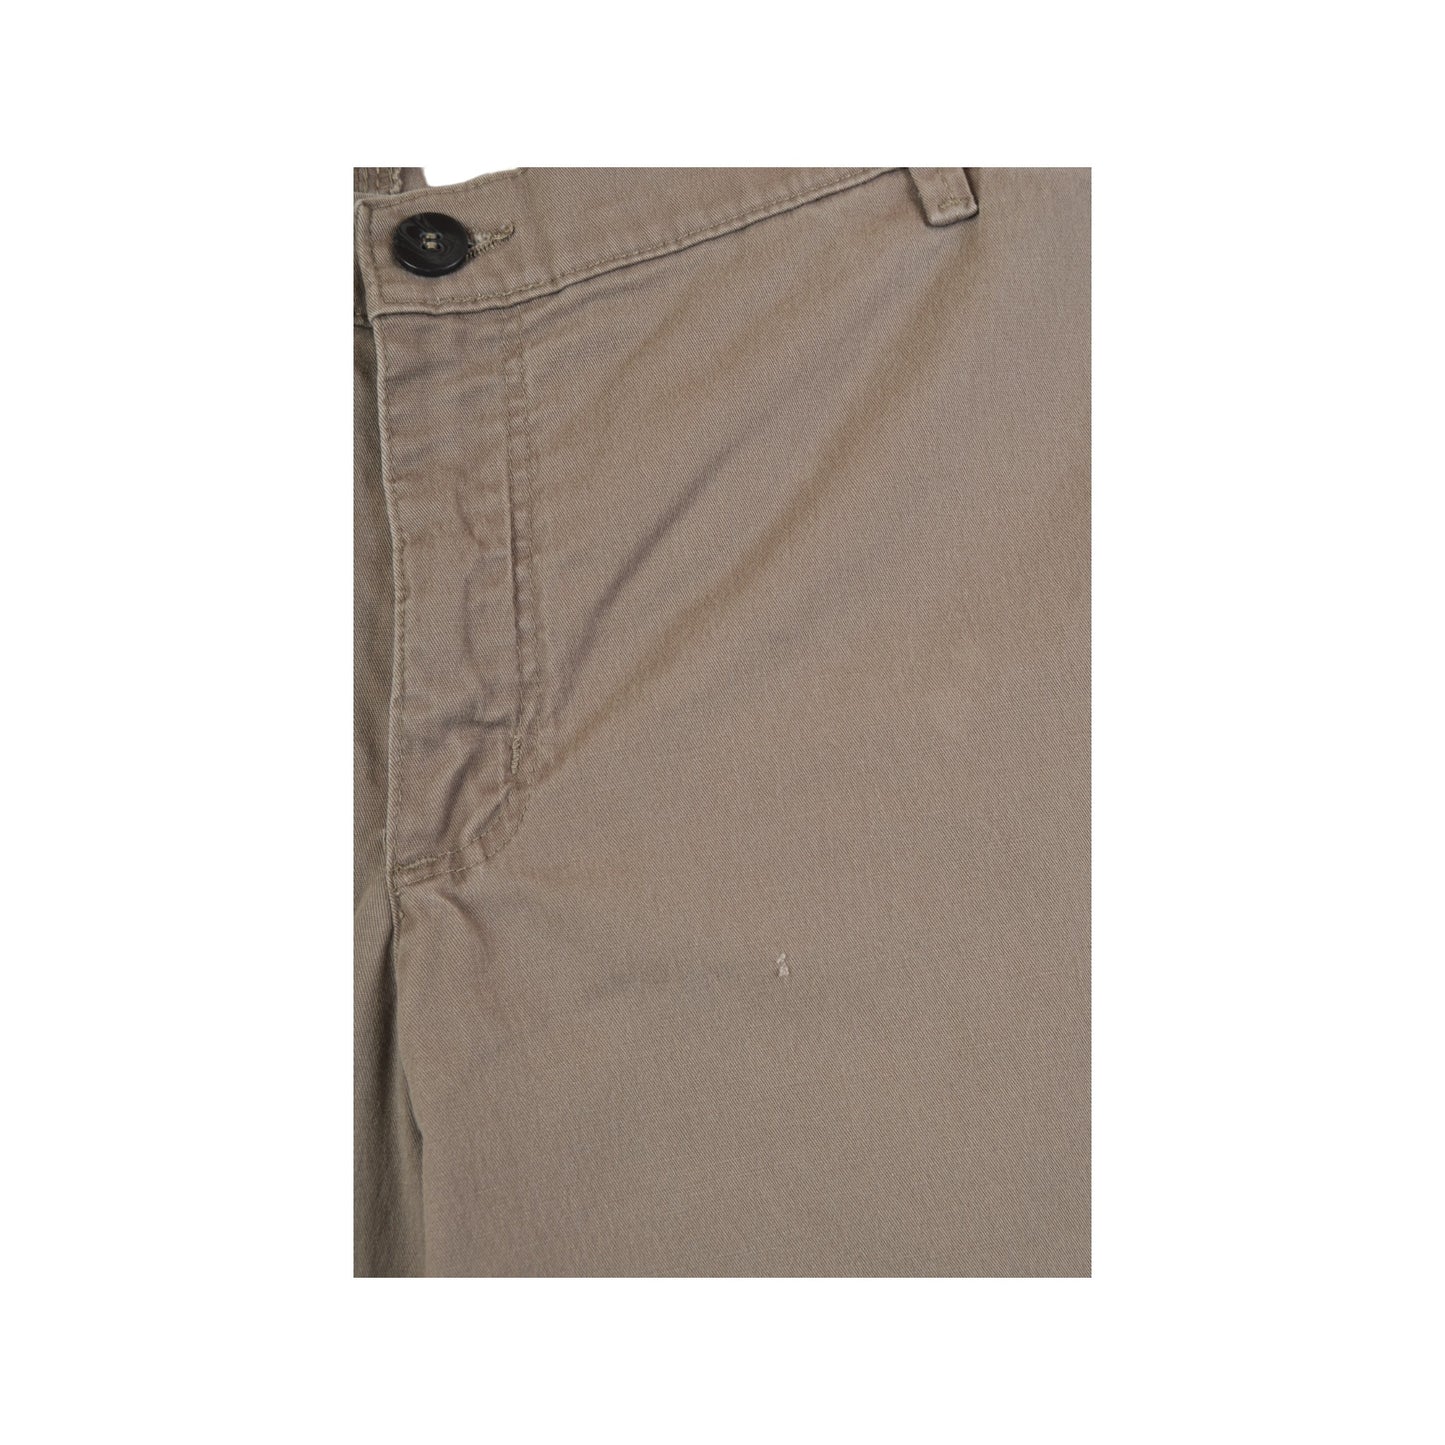 Vintage Lee Cotton Pants Brown Ladies W42 L28